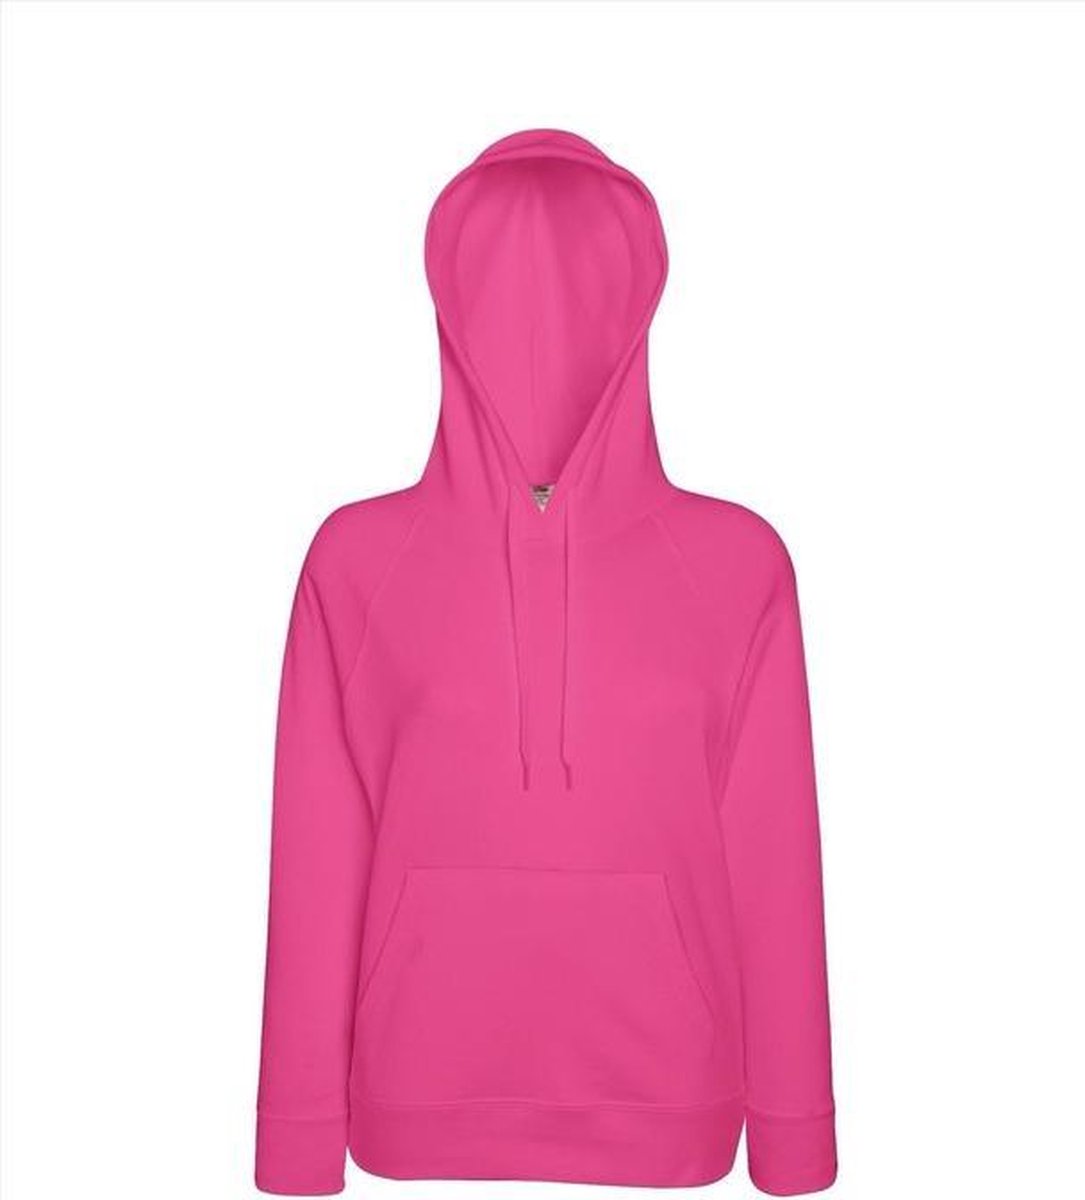 Roze hoodie/sweater voor dames - Dameskleding roze trui met capuchon S  (36/48) | bol.com